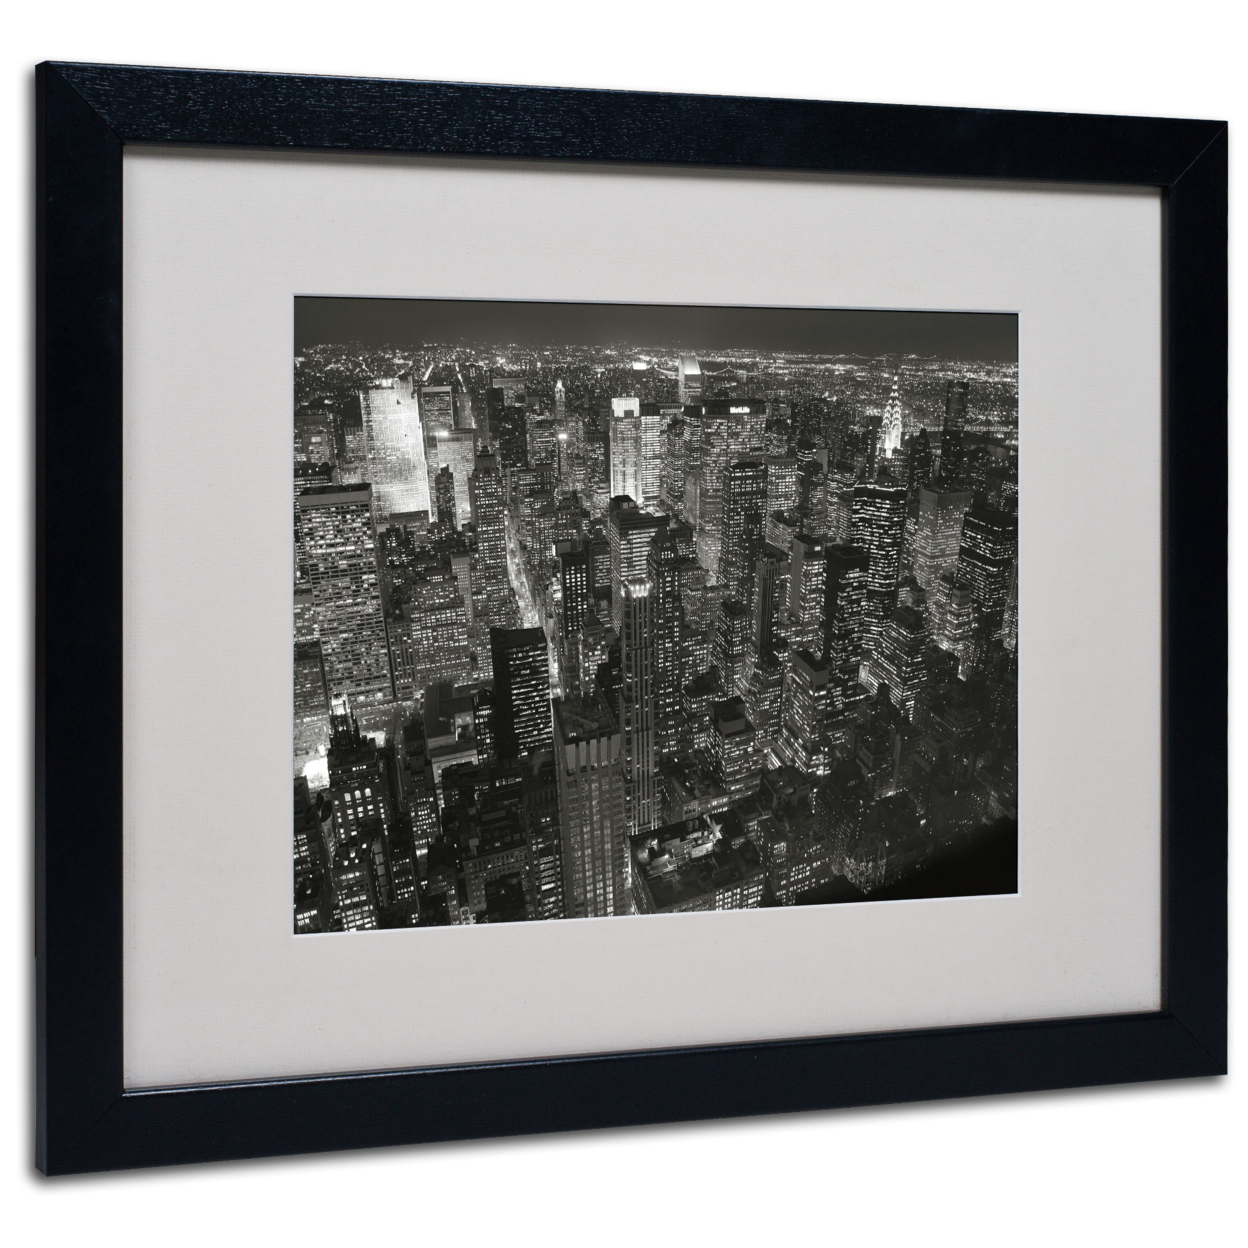 Chris Bliss 'Night Skyline' Black Wooden Framed Art 18 X 22 Inches